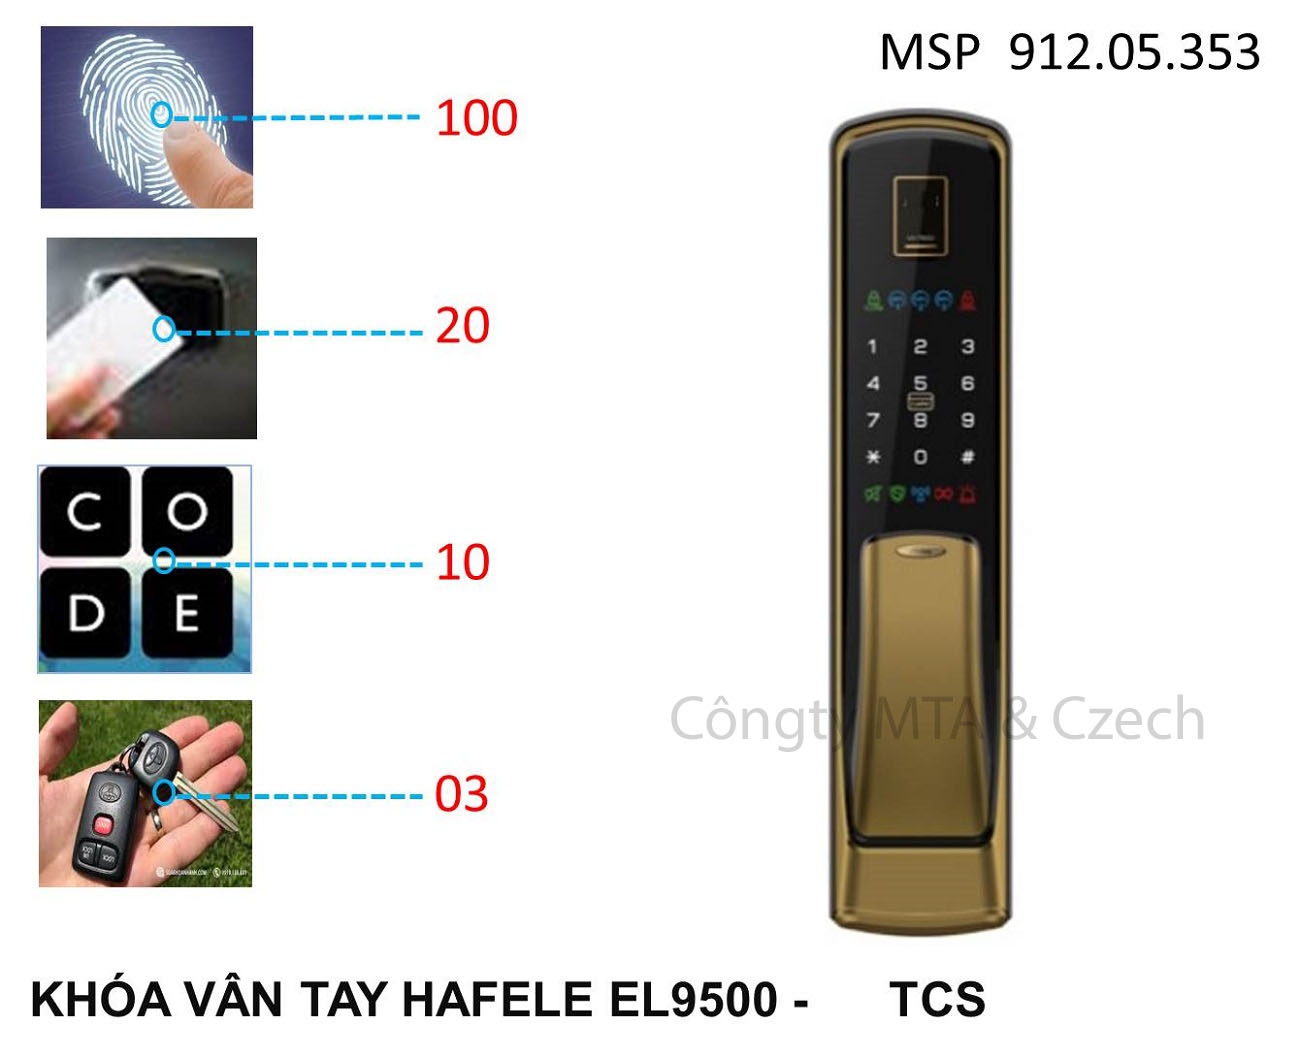 Khóa vân tay Hafele EL9500-TCL màu vàng 912.05.353